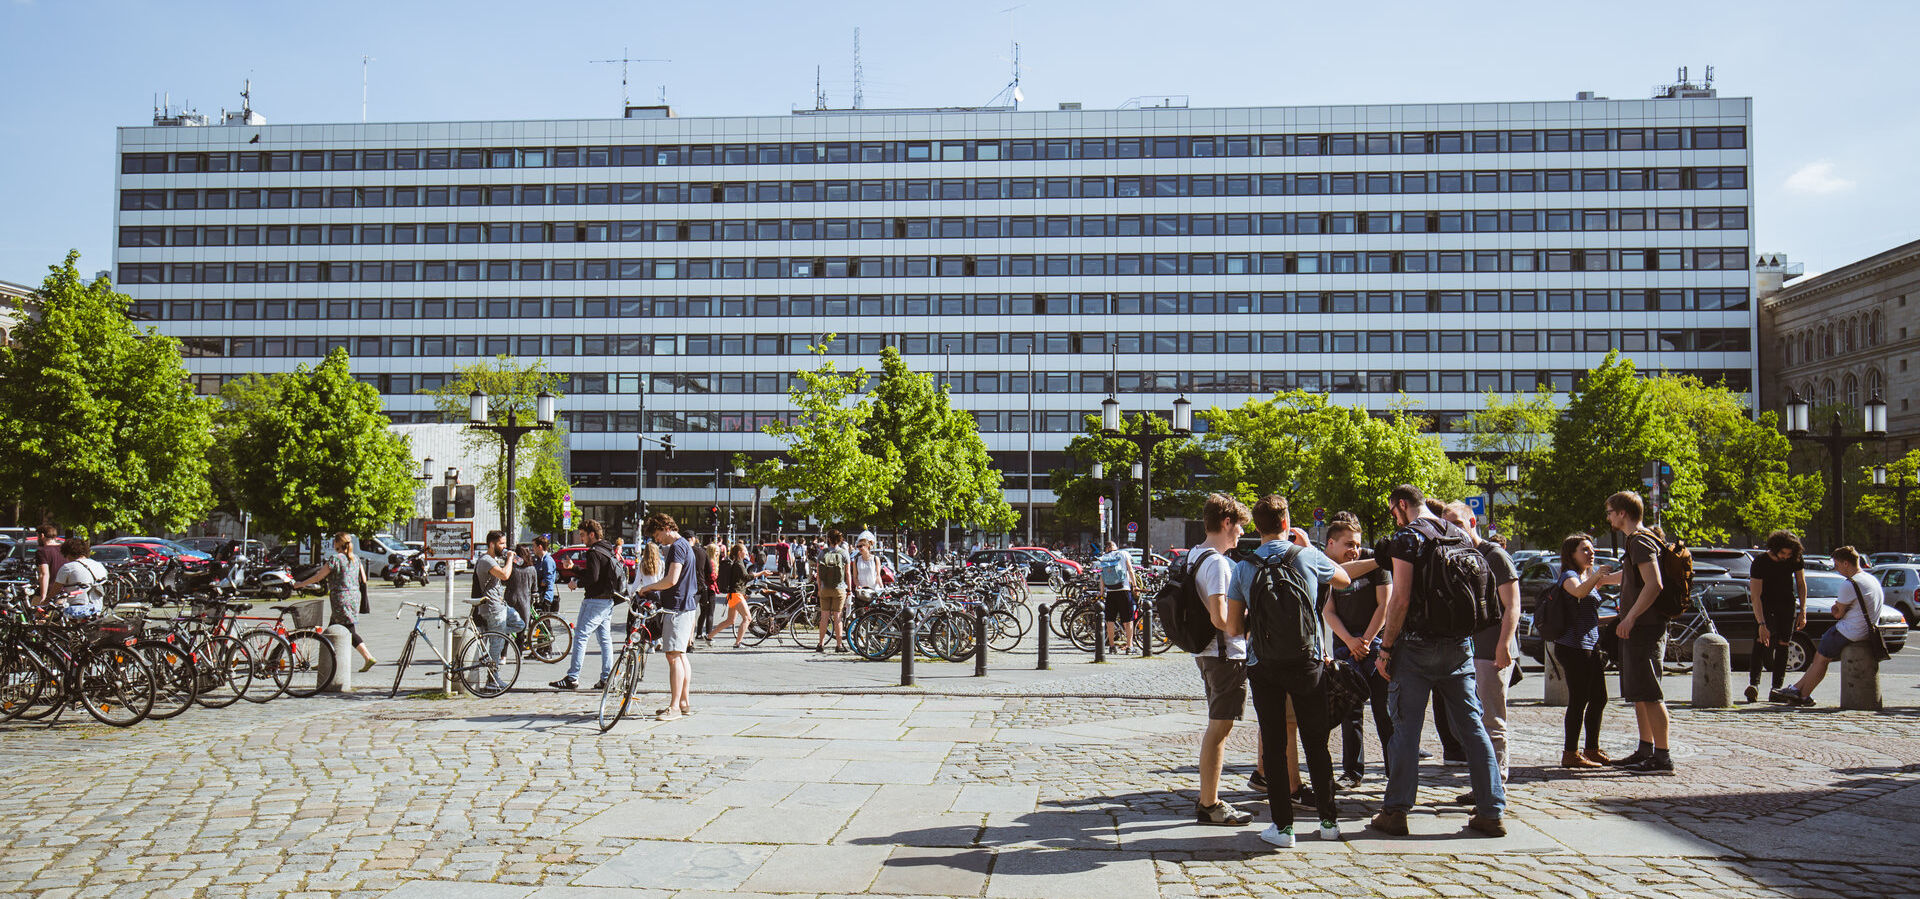 Blick auf das Hauptgebäude über die Straße des 17. Juni bei Sonnenschein, Studierende stehen in Gruppen